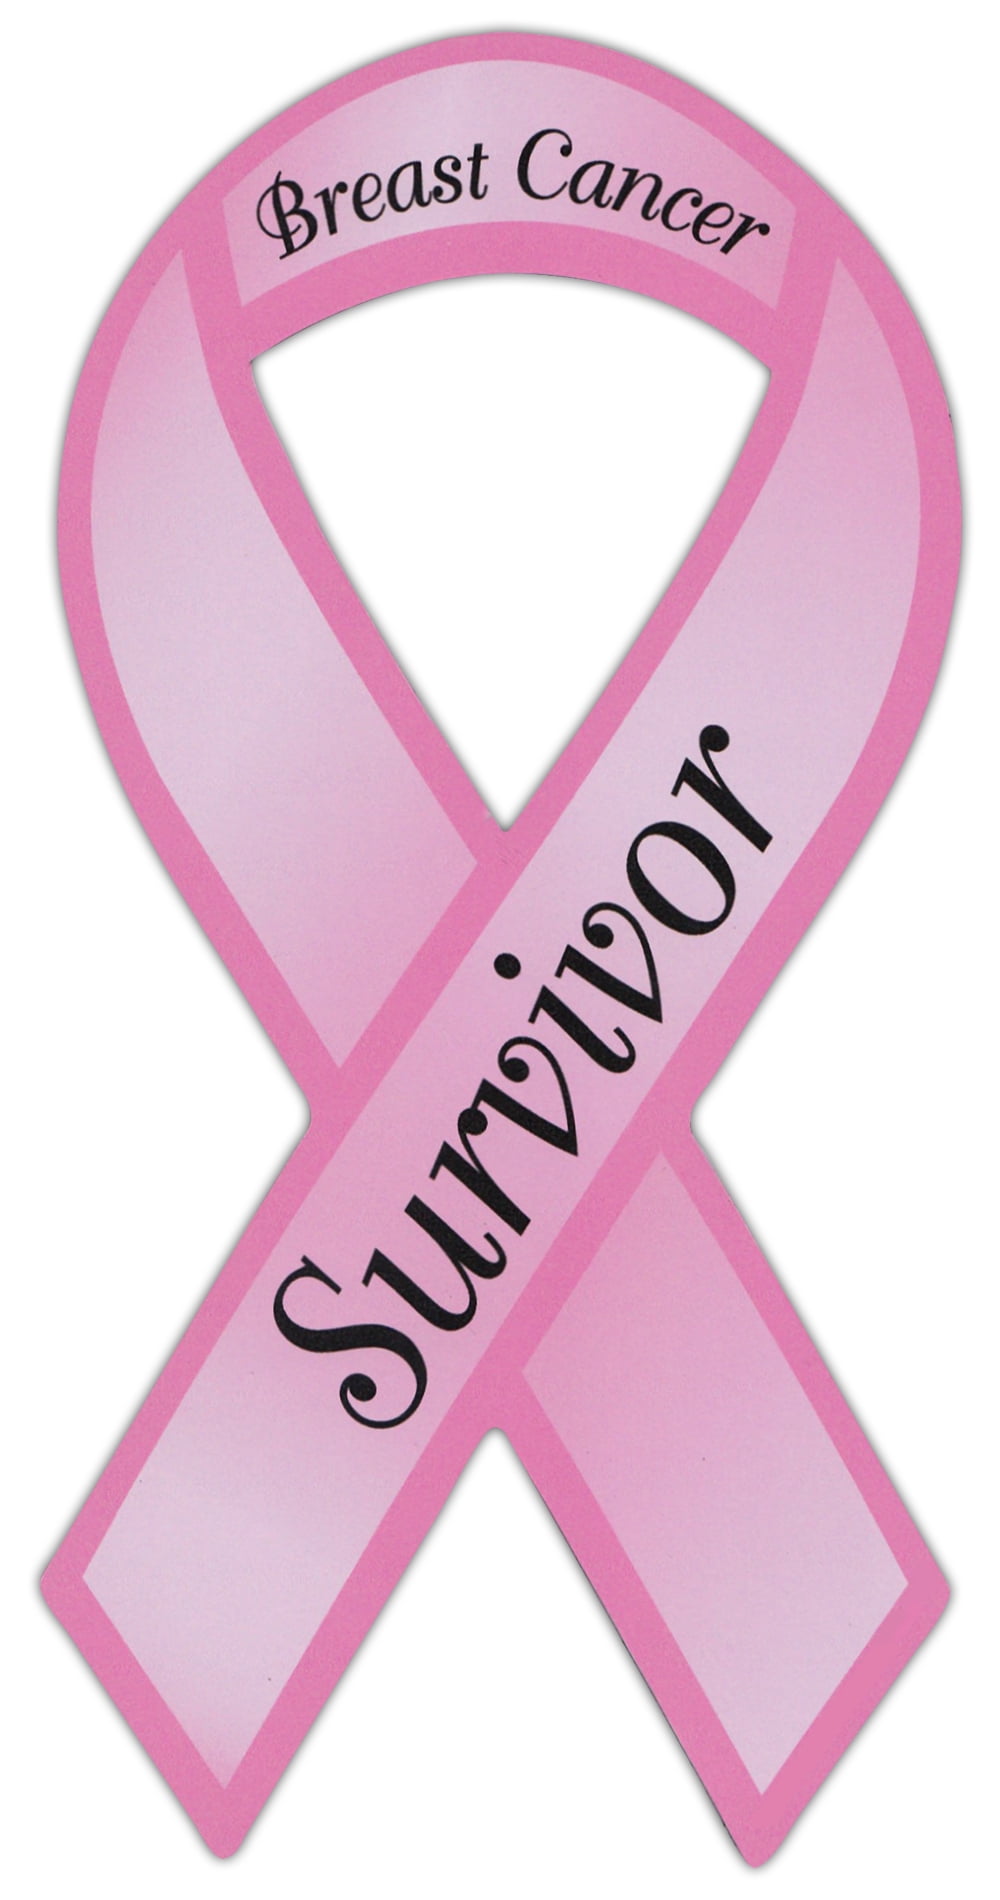 Survivor breast cancer vinyl sticker decal Car truck suv